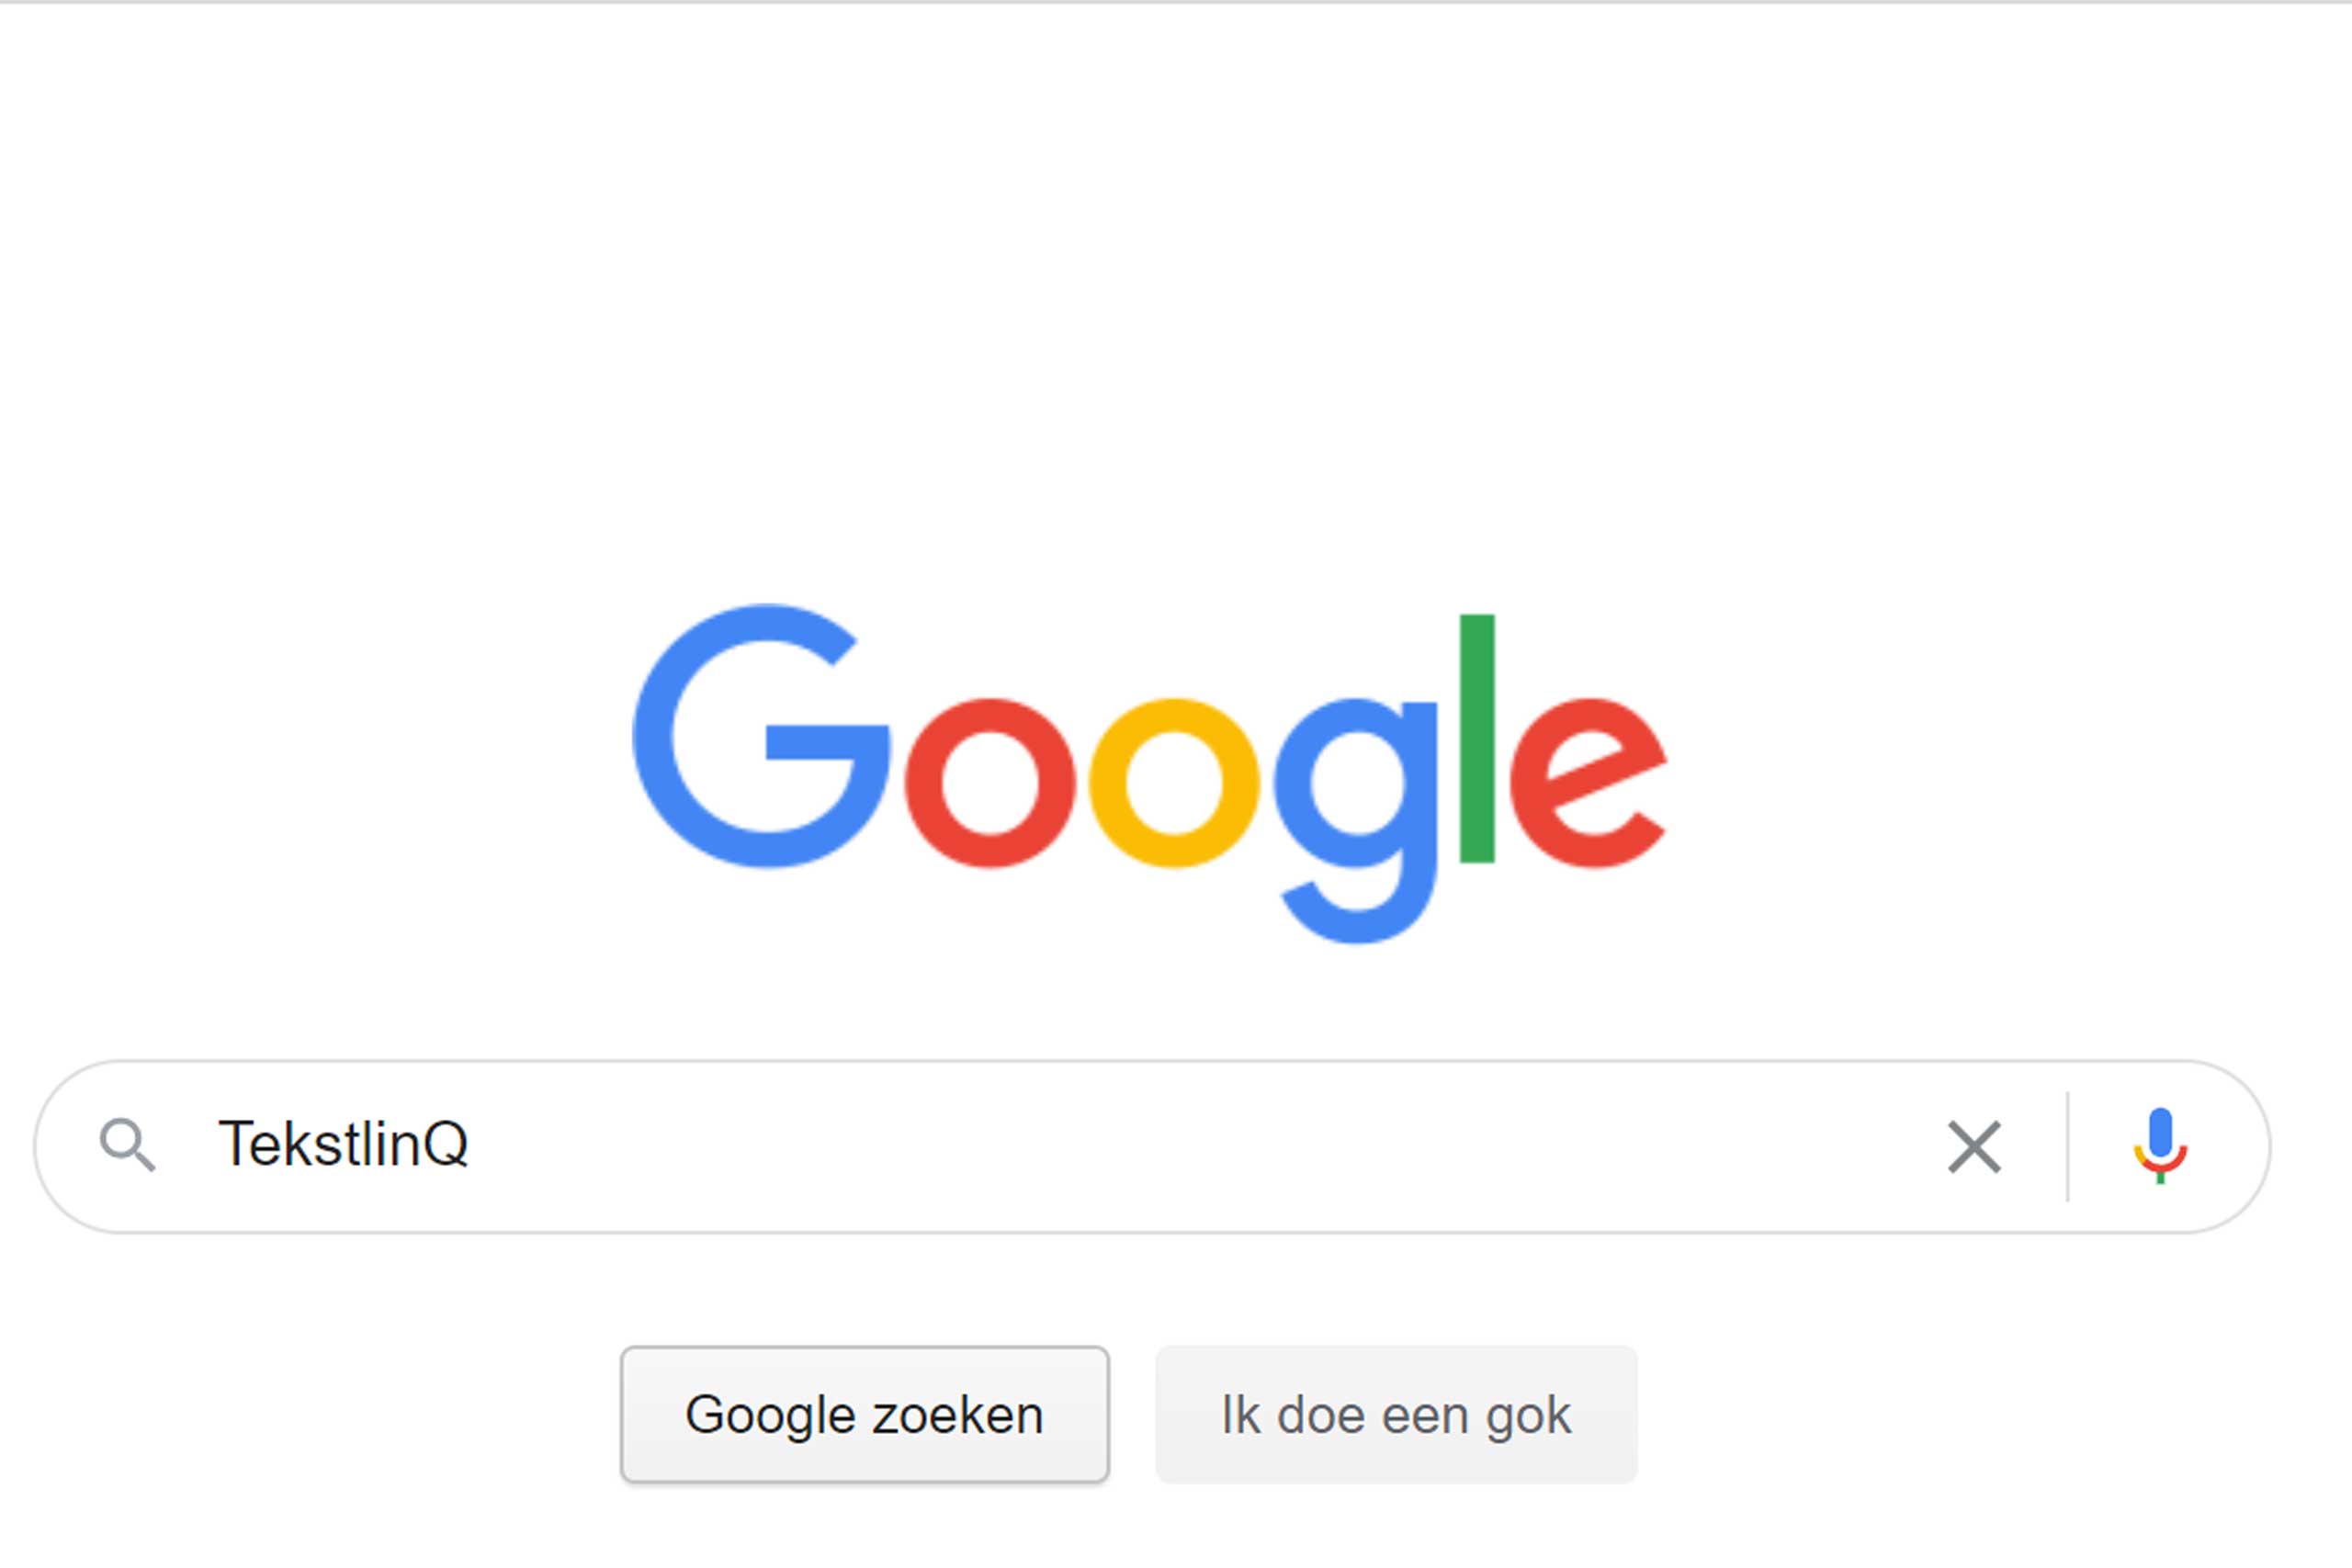 Google zoekbalk: SEO-teksten verbeteren de vindbaarheid van je site - TekstlinQ Zwolle